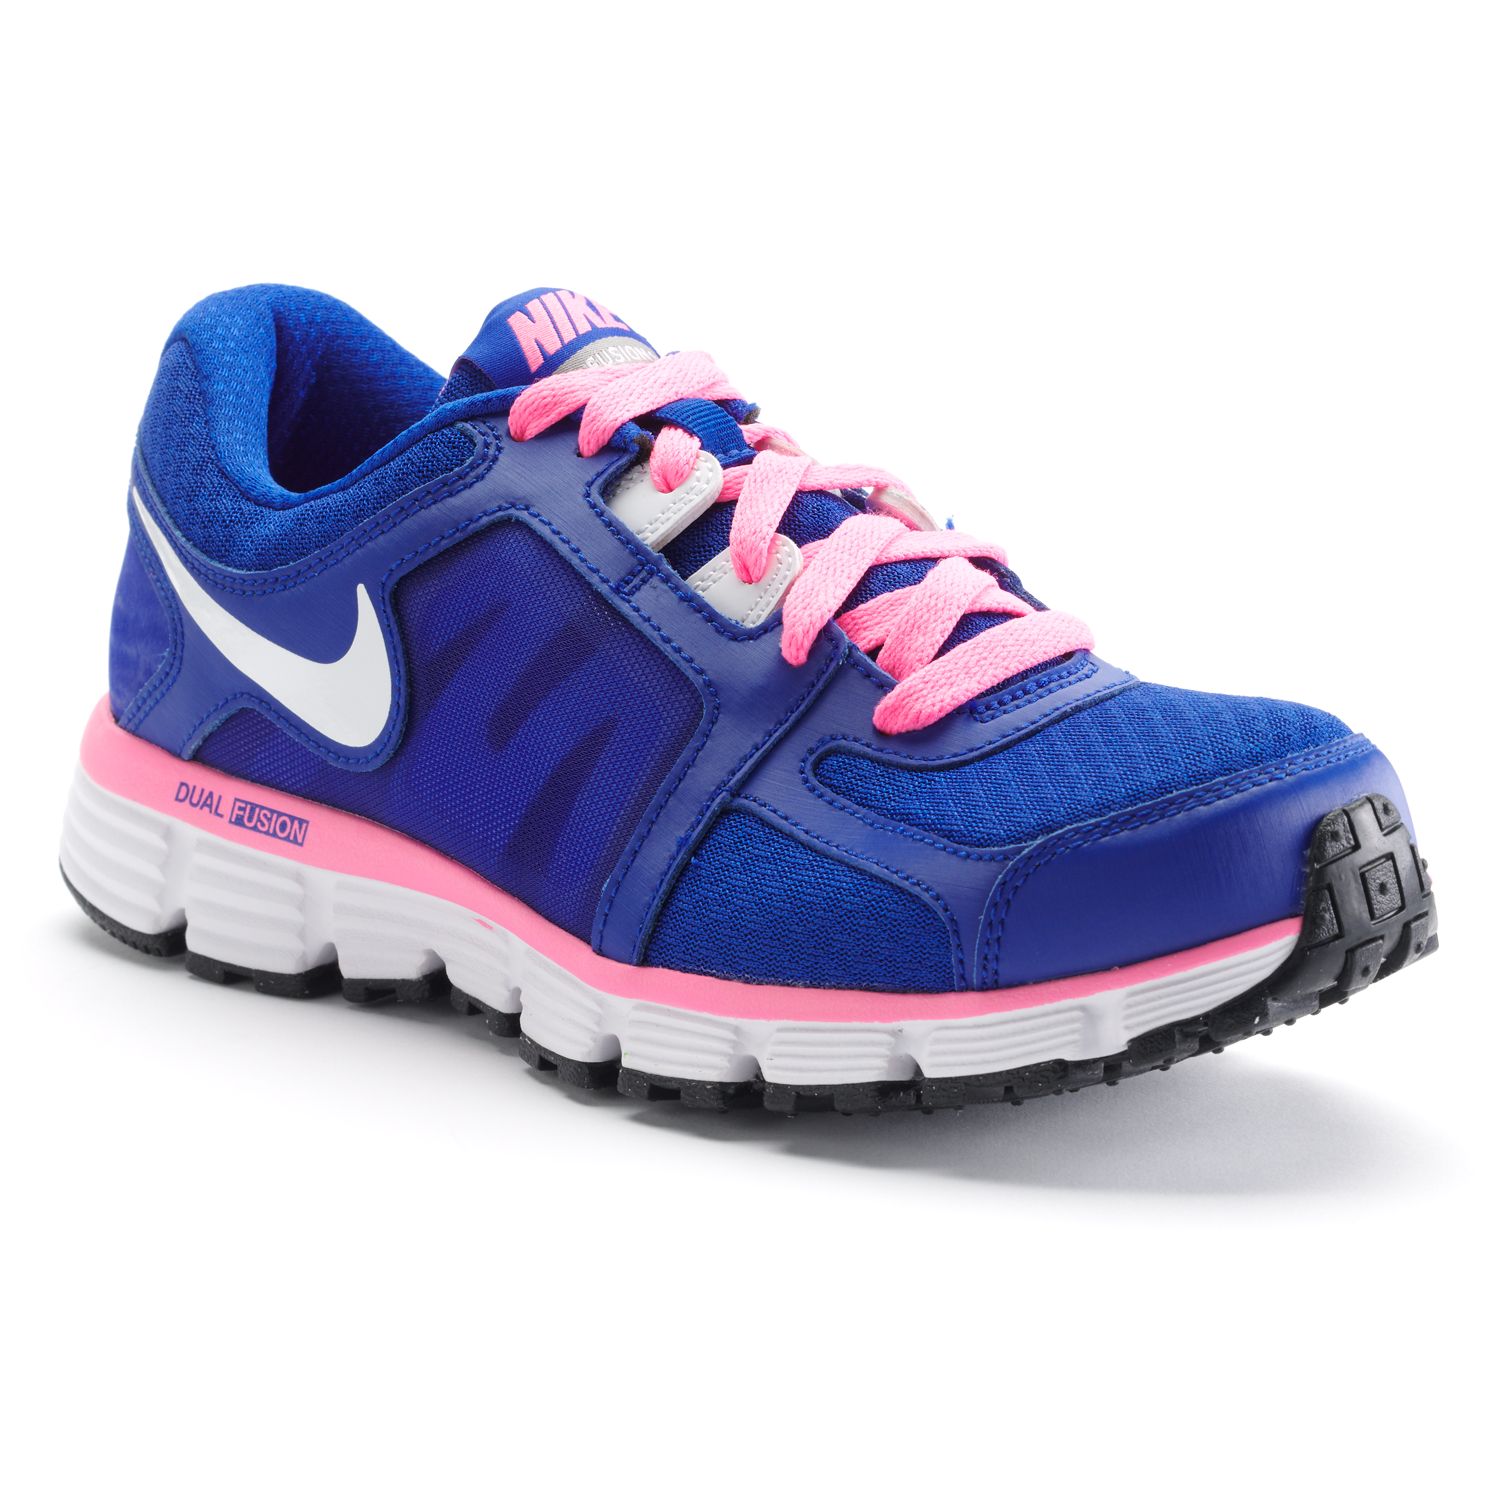 Nike Dual Fusion ST 2 Running Shoes - Women